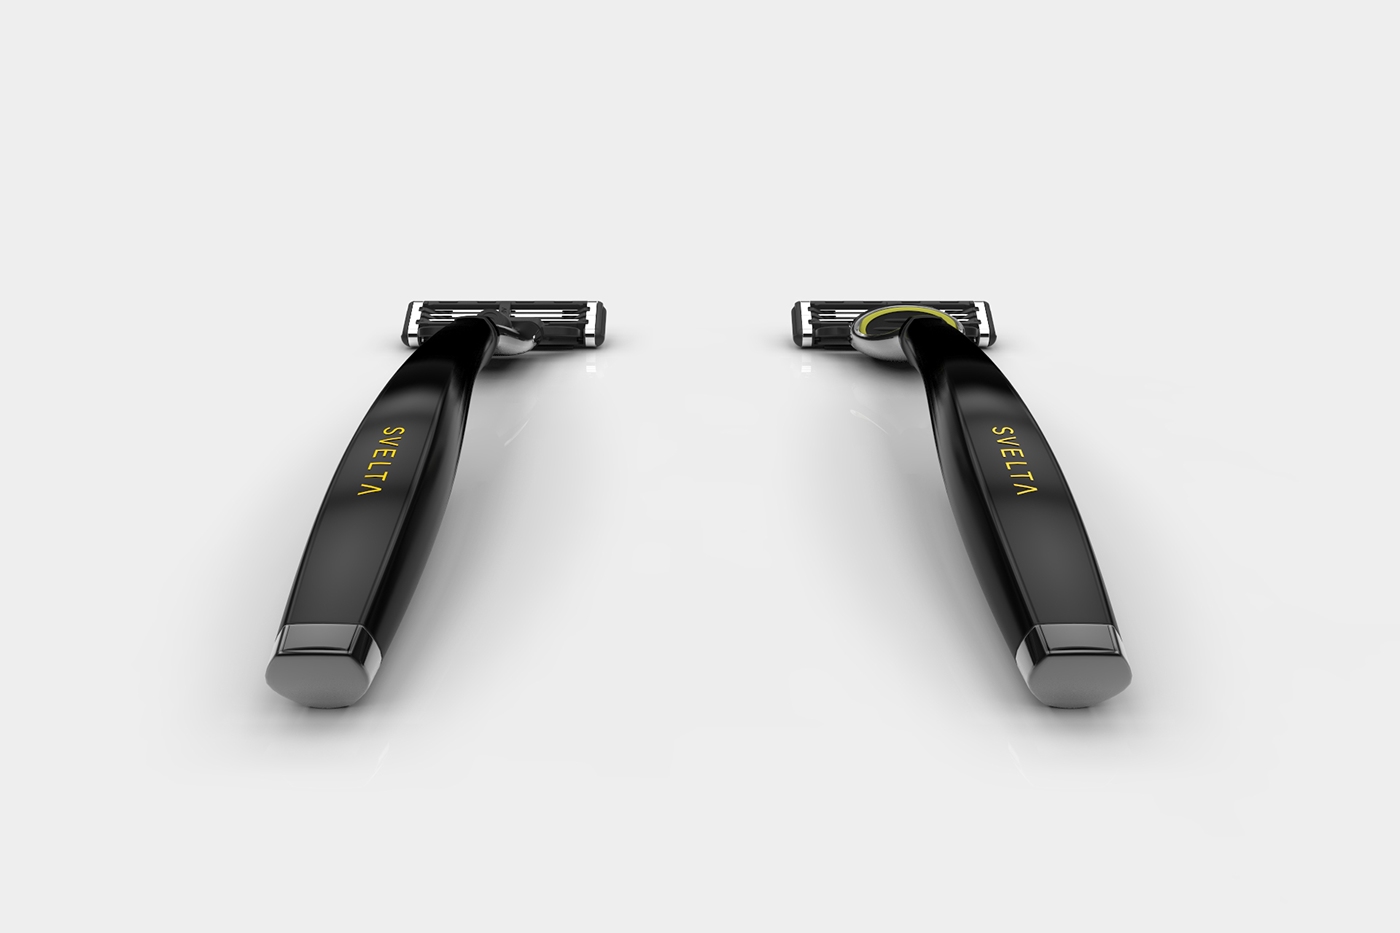 handle Razor razors 3D rendering GILLETTE Mach3 fusion pro glide handle design gillette design product 3D Rendering